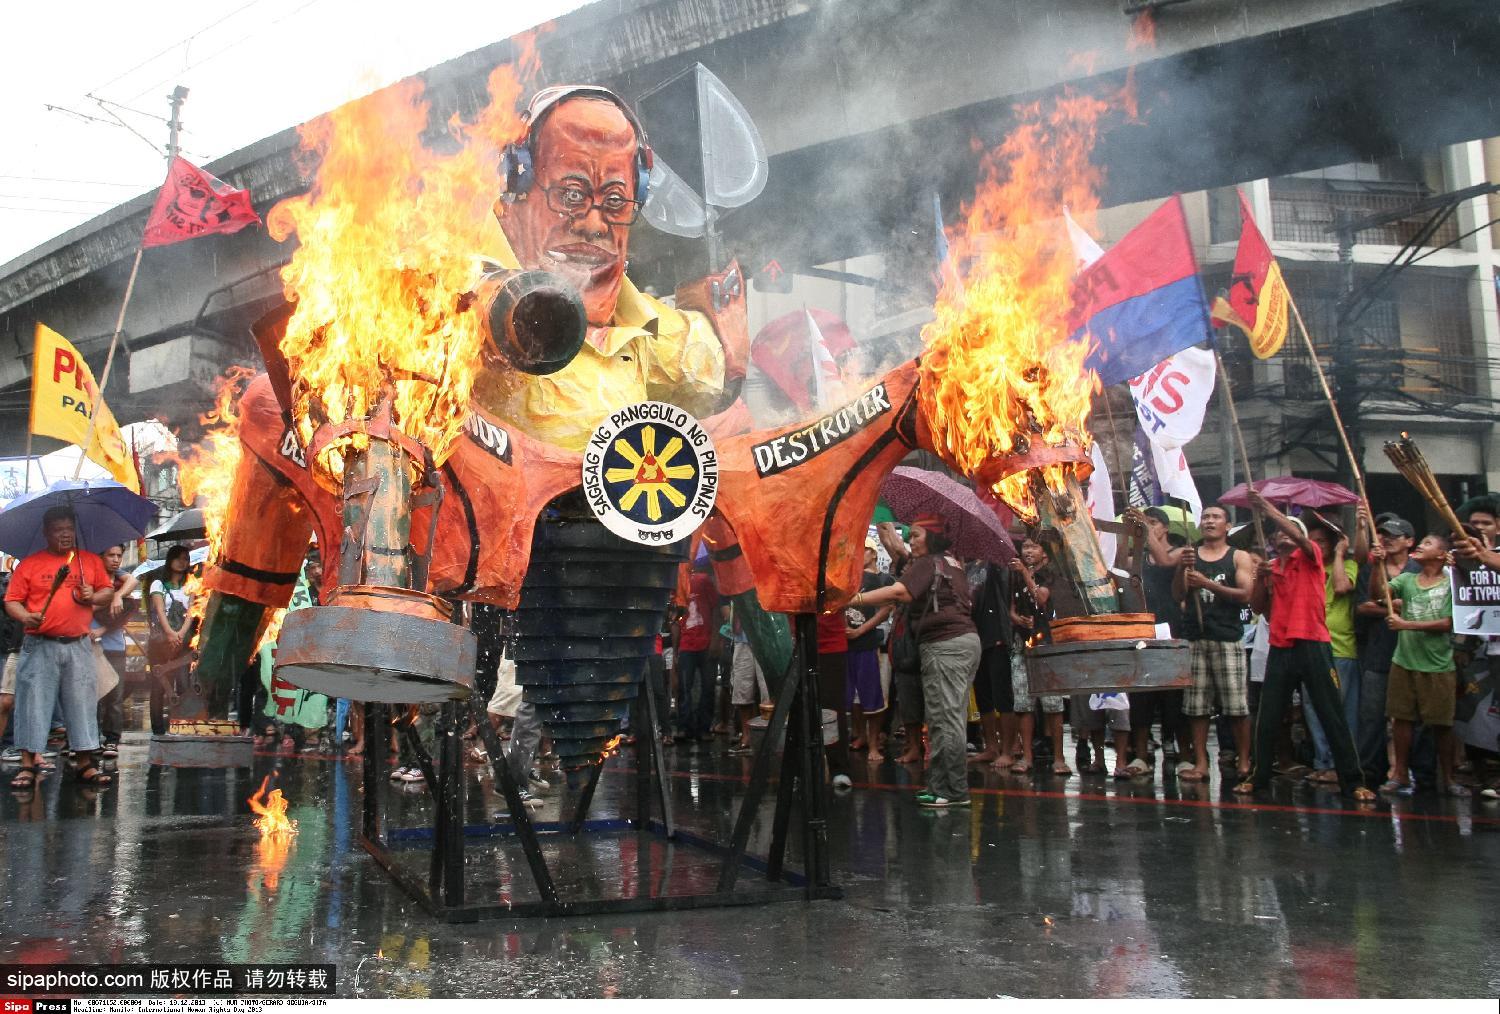 菲民众游行焚烧阿基诺人像纪